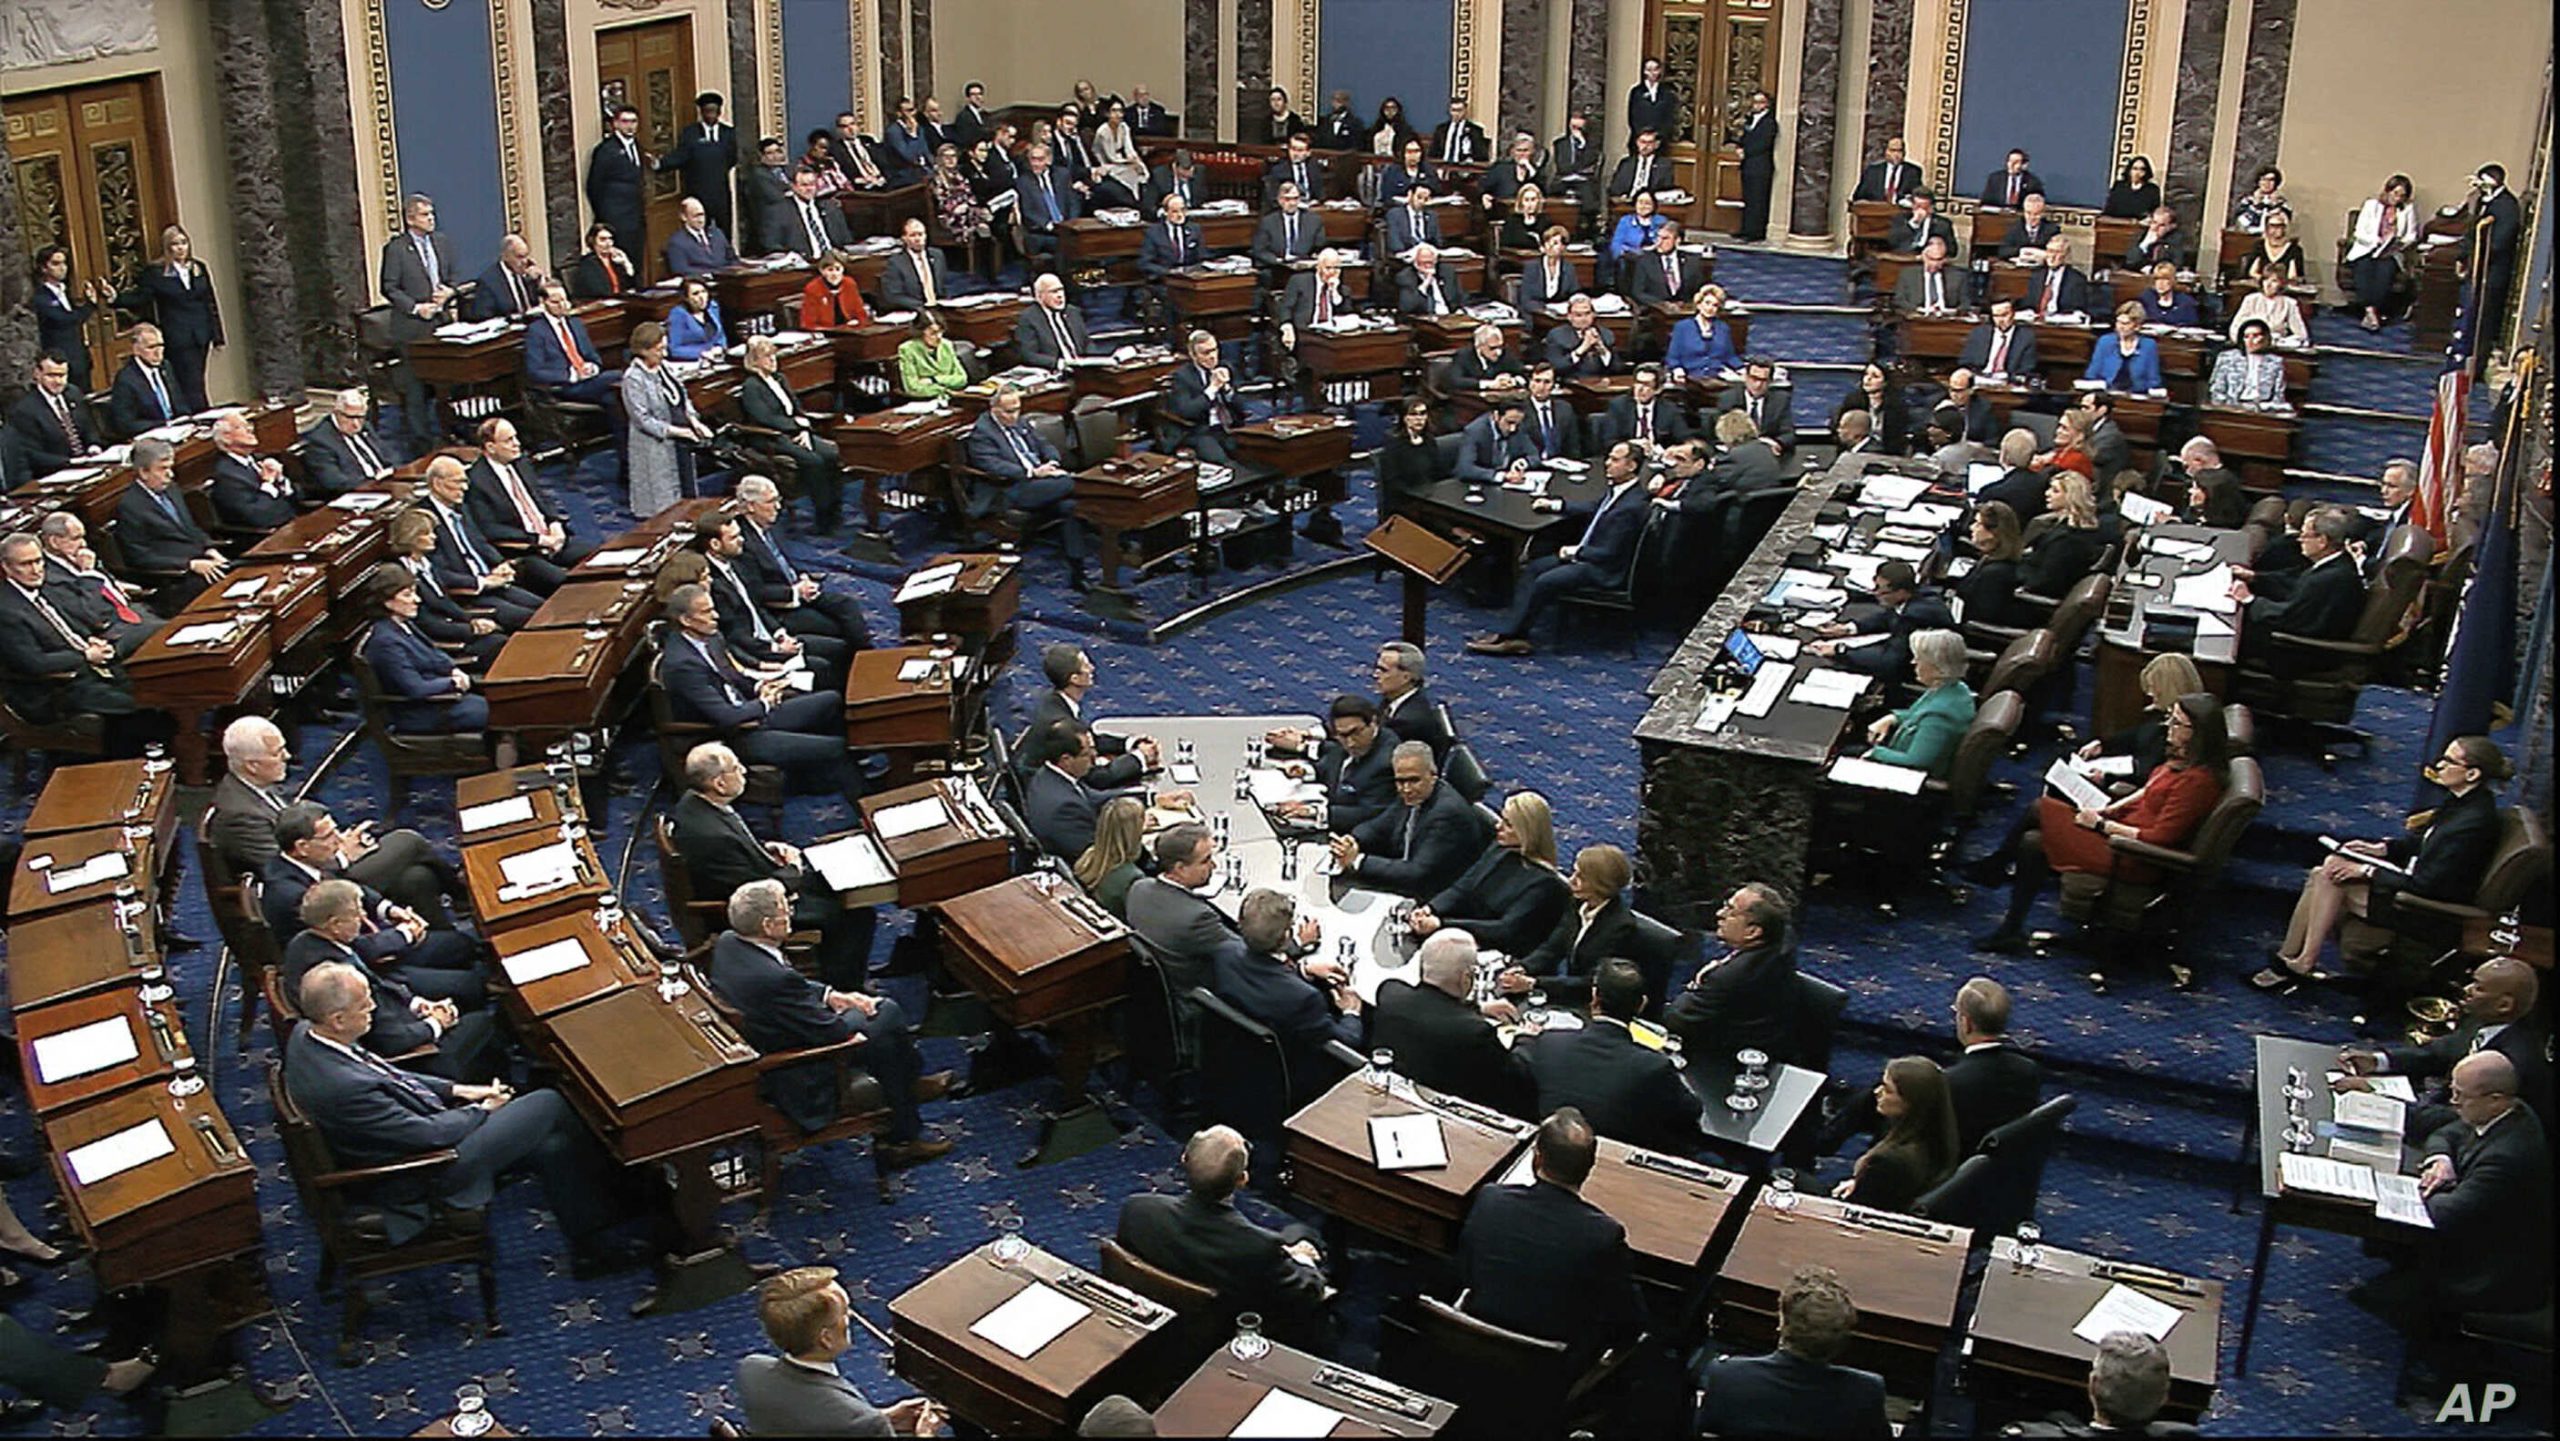 The Us Senate Declares Trump's Impeachment Process Constitutional!